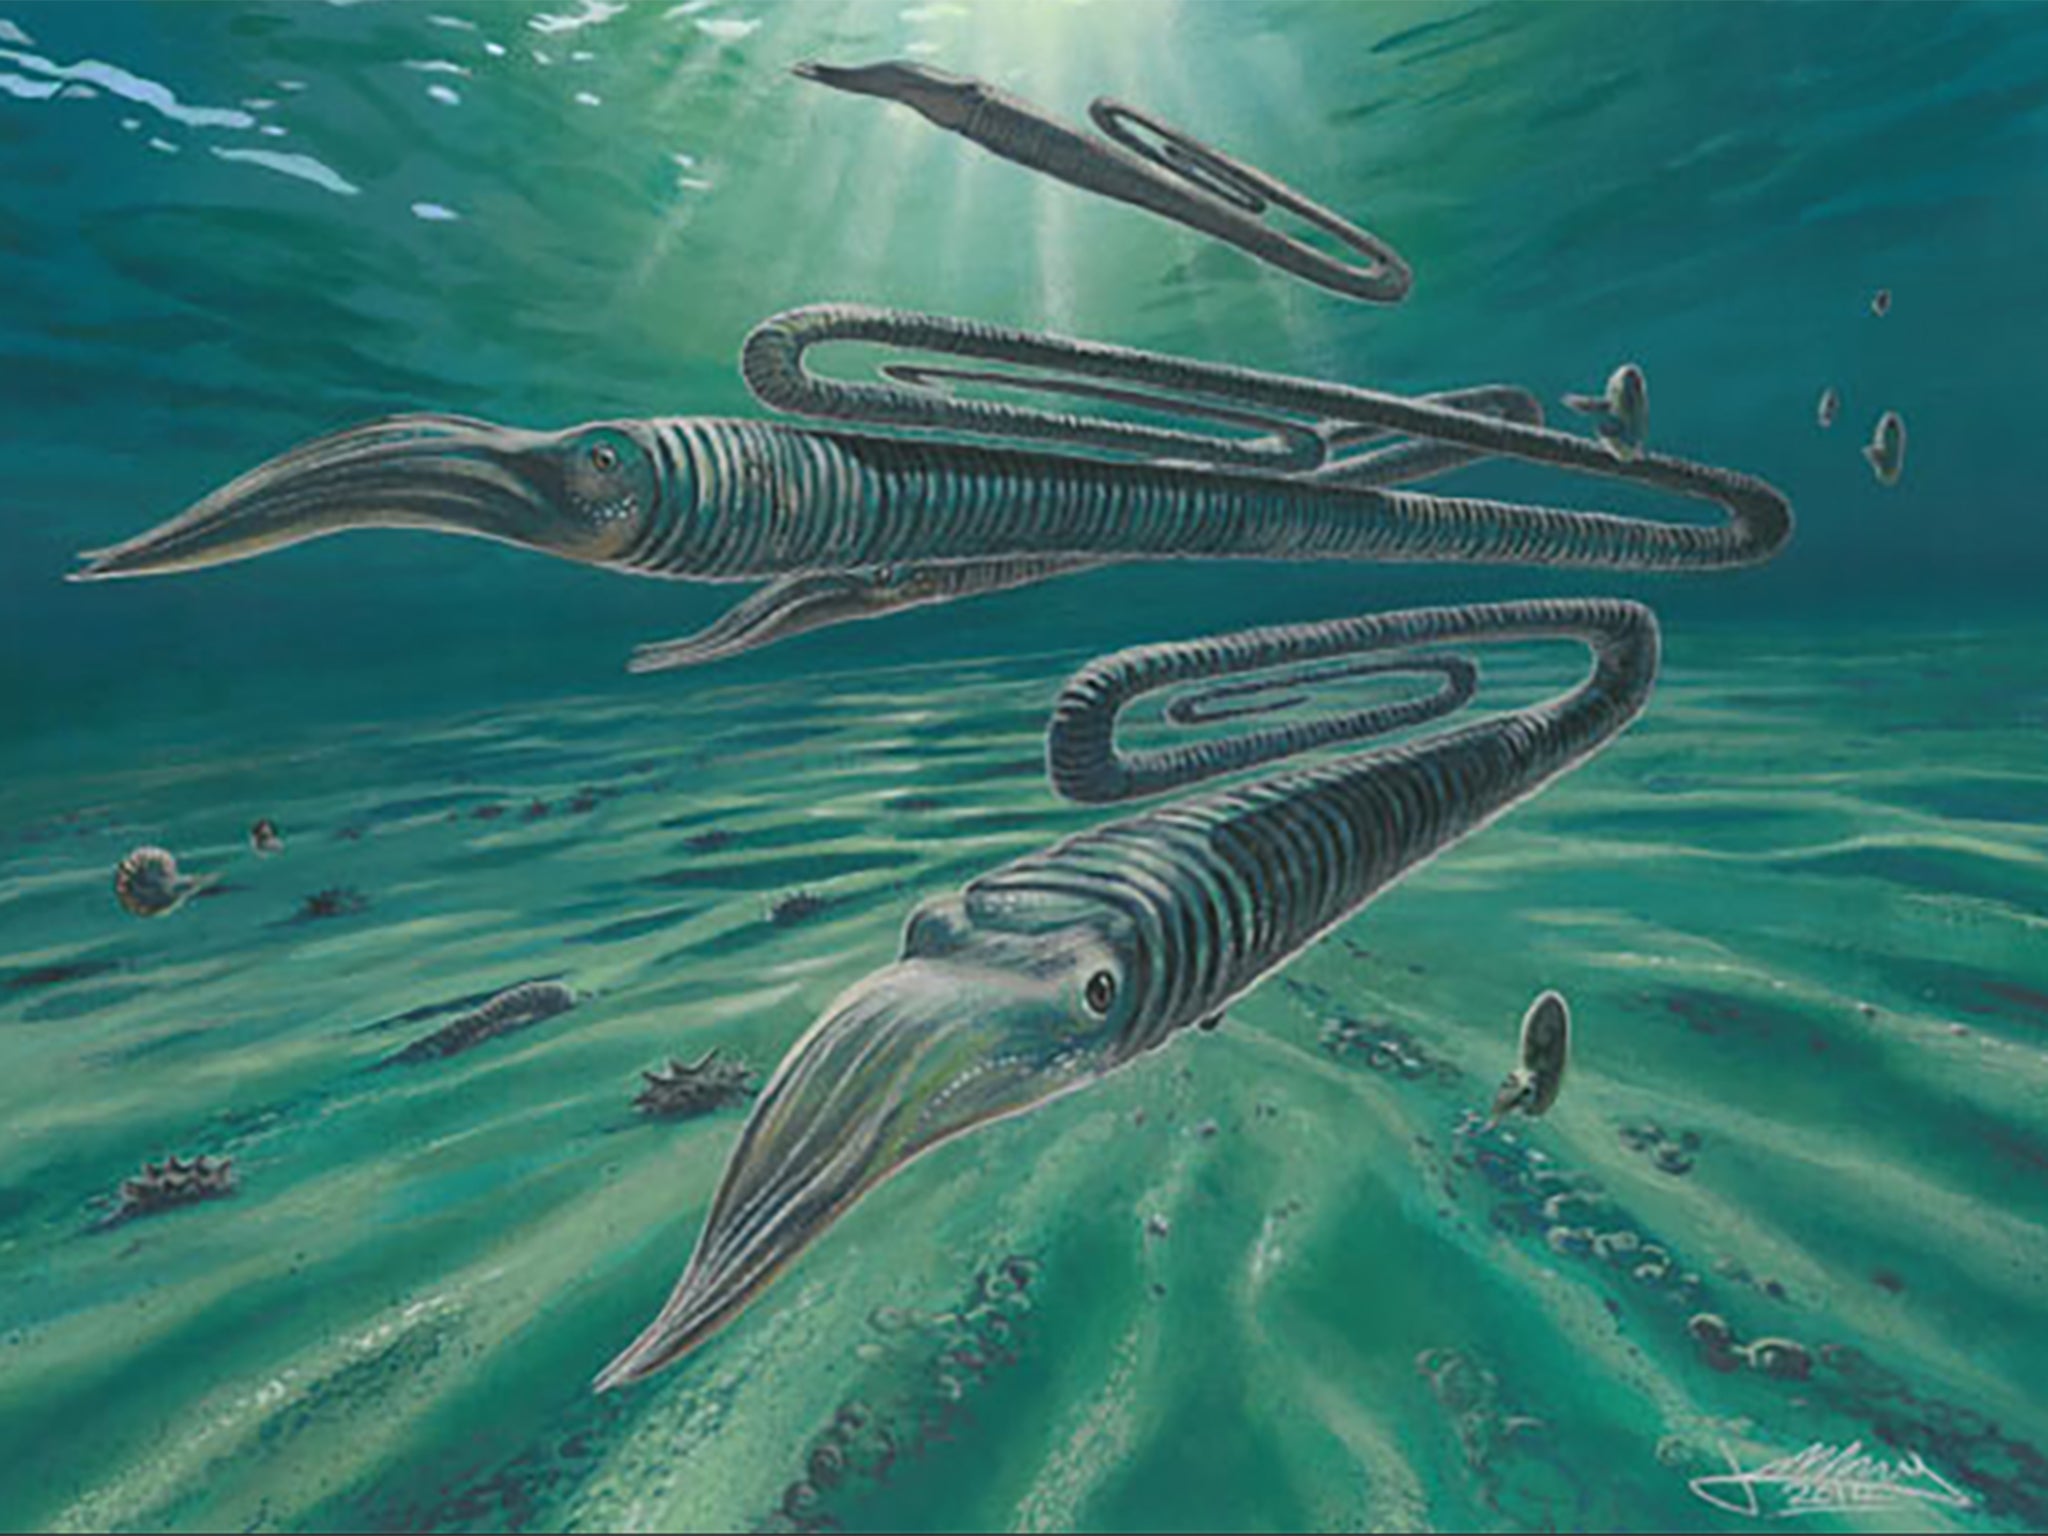 El Diplomoceras maximum vivió en las aguas alrededor de la Antártida y su población sufrió un evento de extinción masiva al mismo tiempo que los dinosaurios.